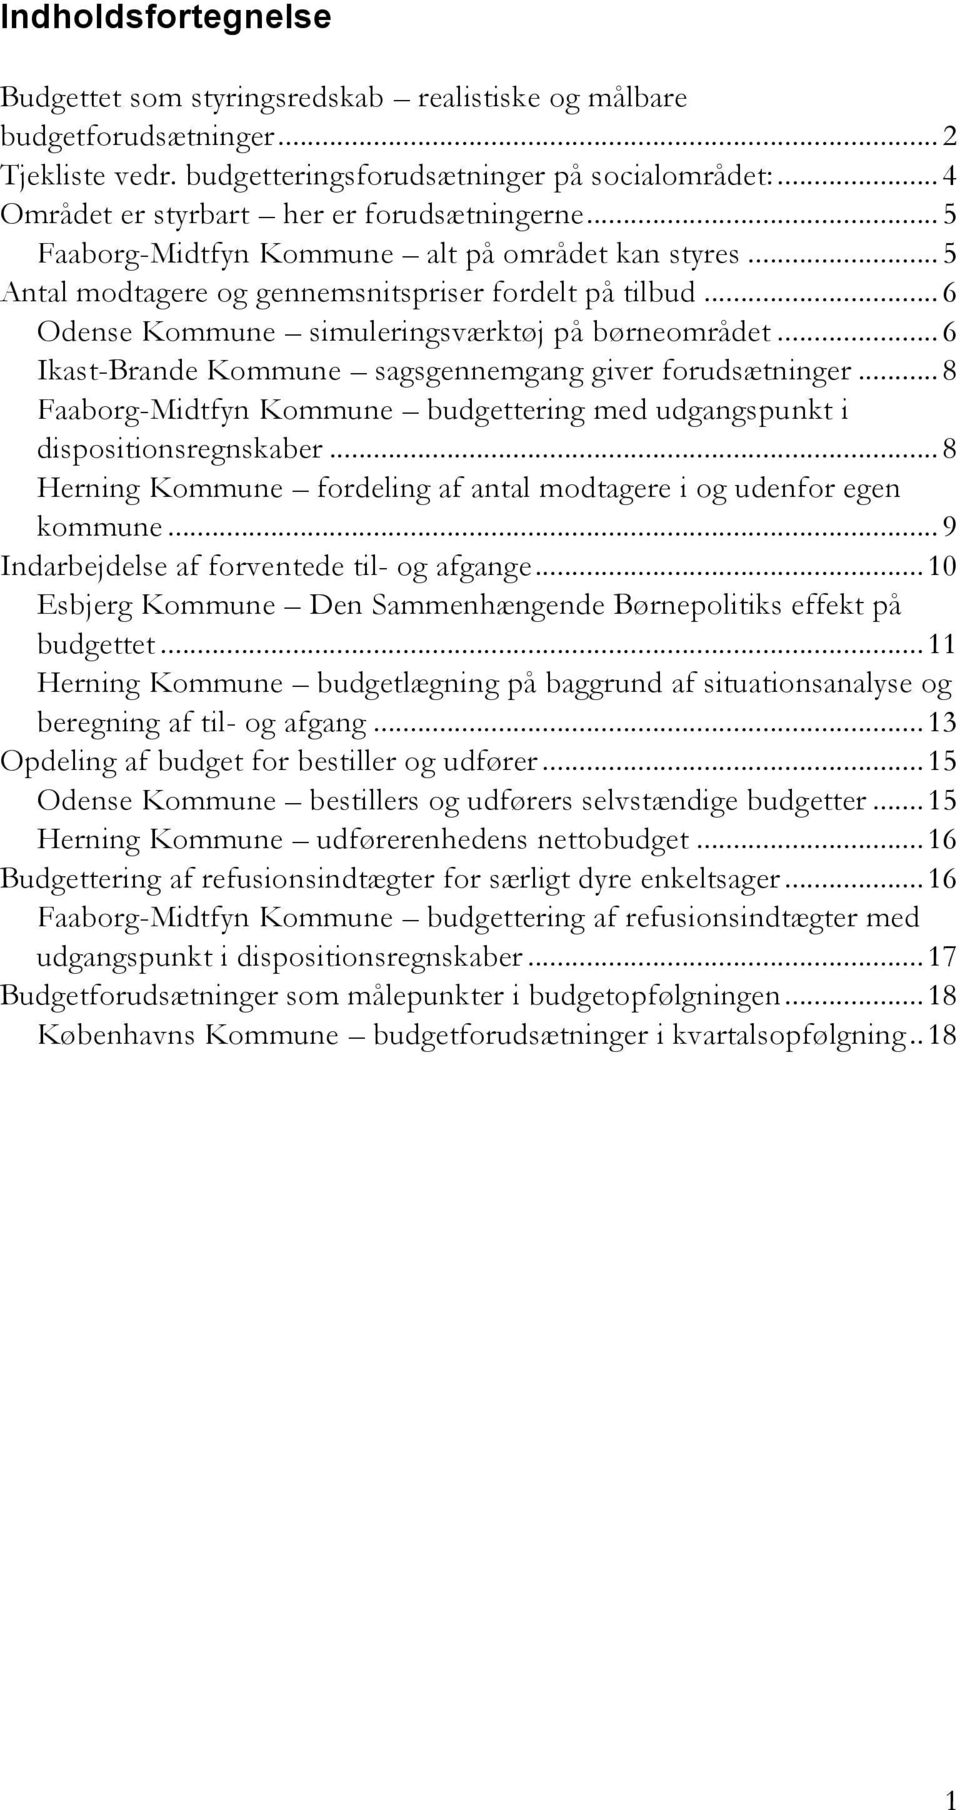 .. 6 Odense Kommune simuleringsværktøj på børneområdet... 6 Ikast-Brande Kommune sagsgennemgang giver forudsætninger... 8 Faaborg-Midtfyn Kommune budgettering med udgangspunkt i dispositionsregnskaber.